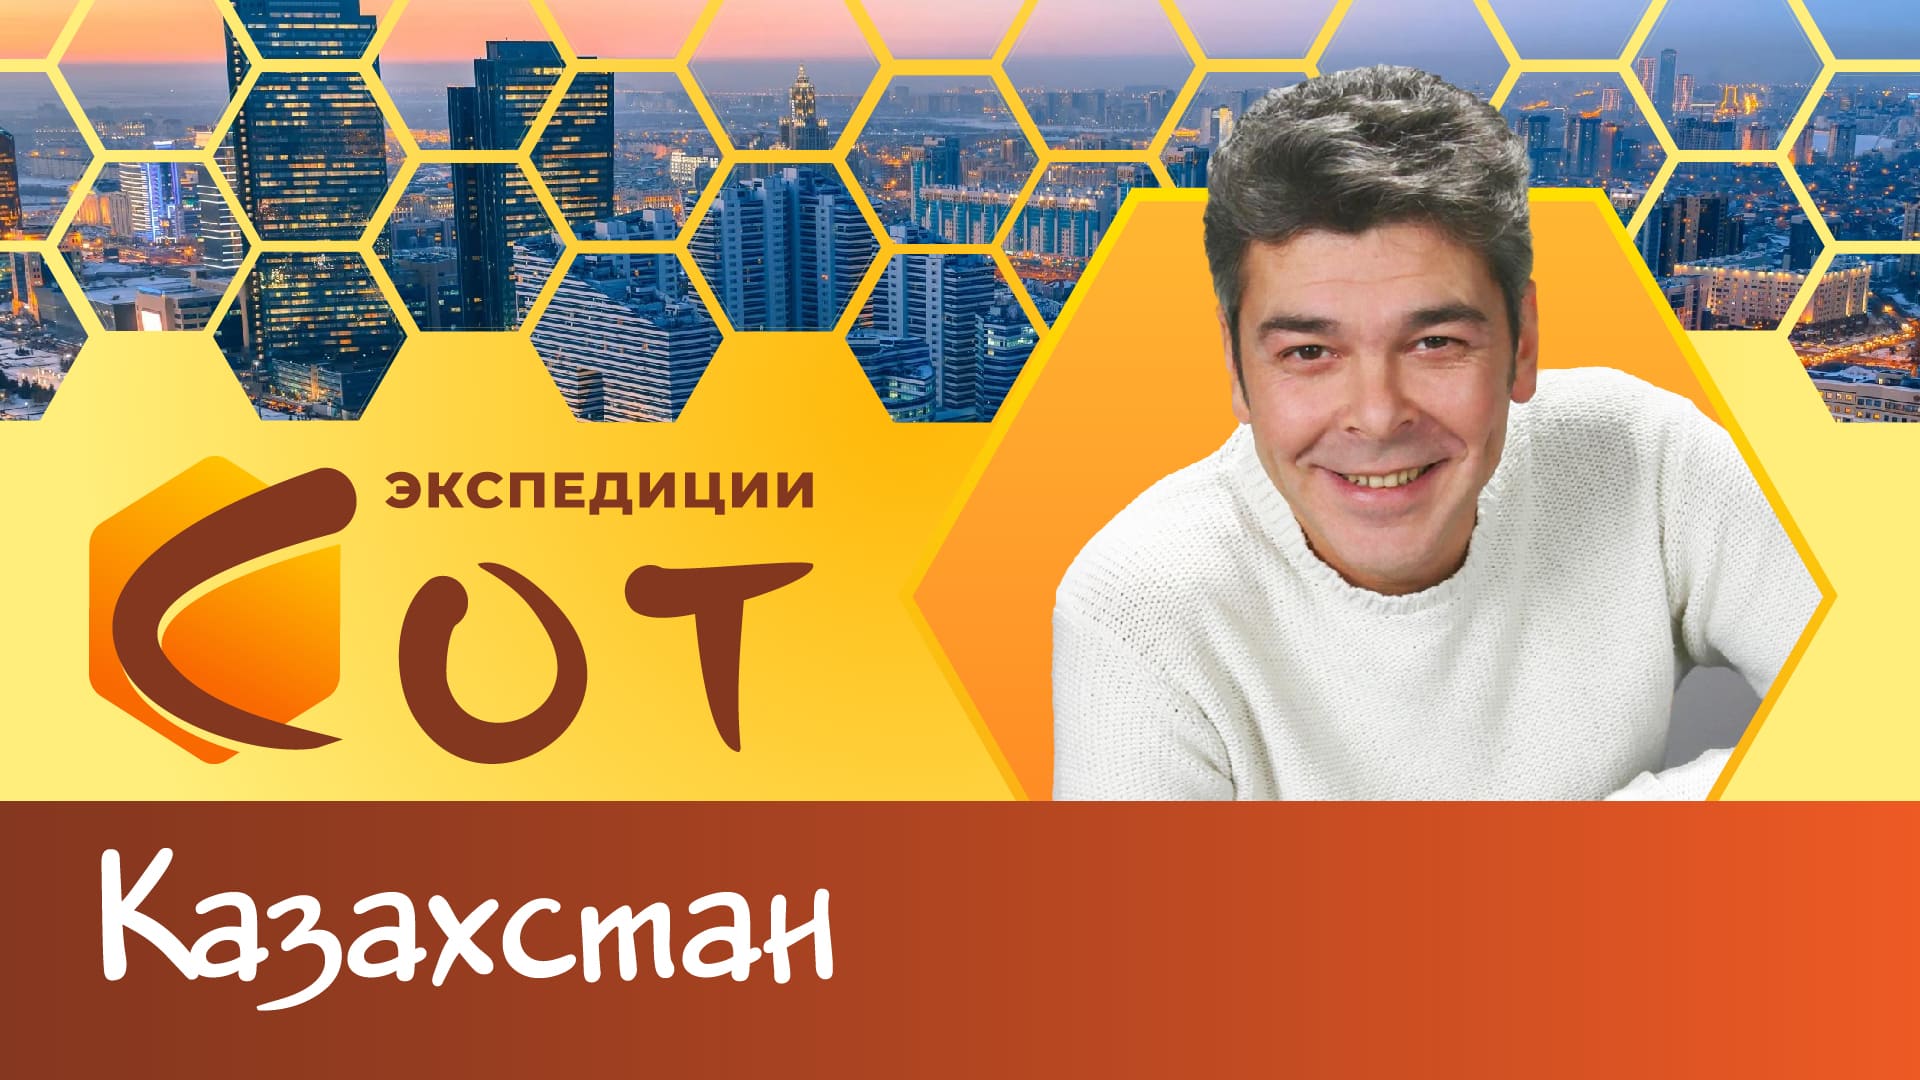 Шелковый путь образования. Республика Казахстан